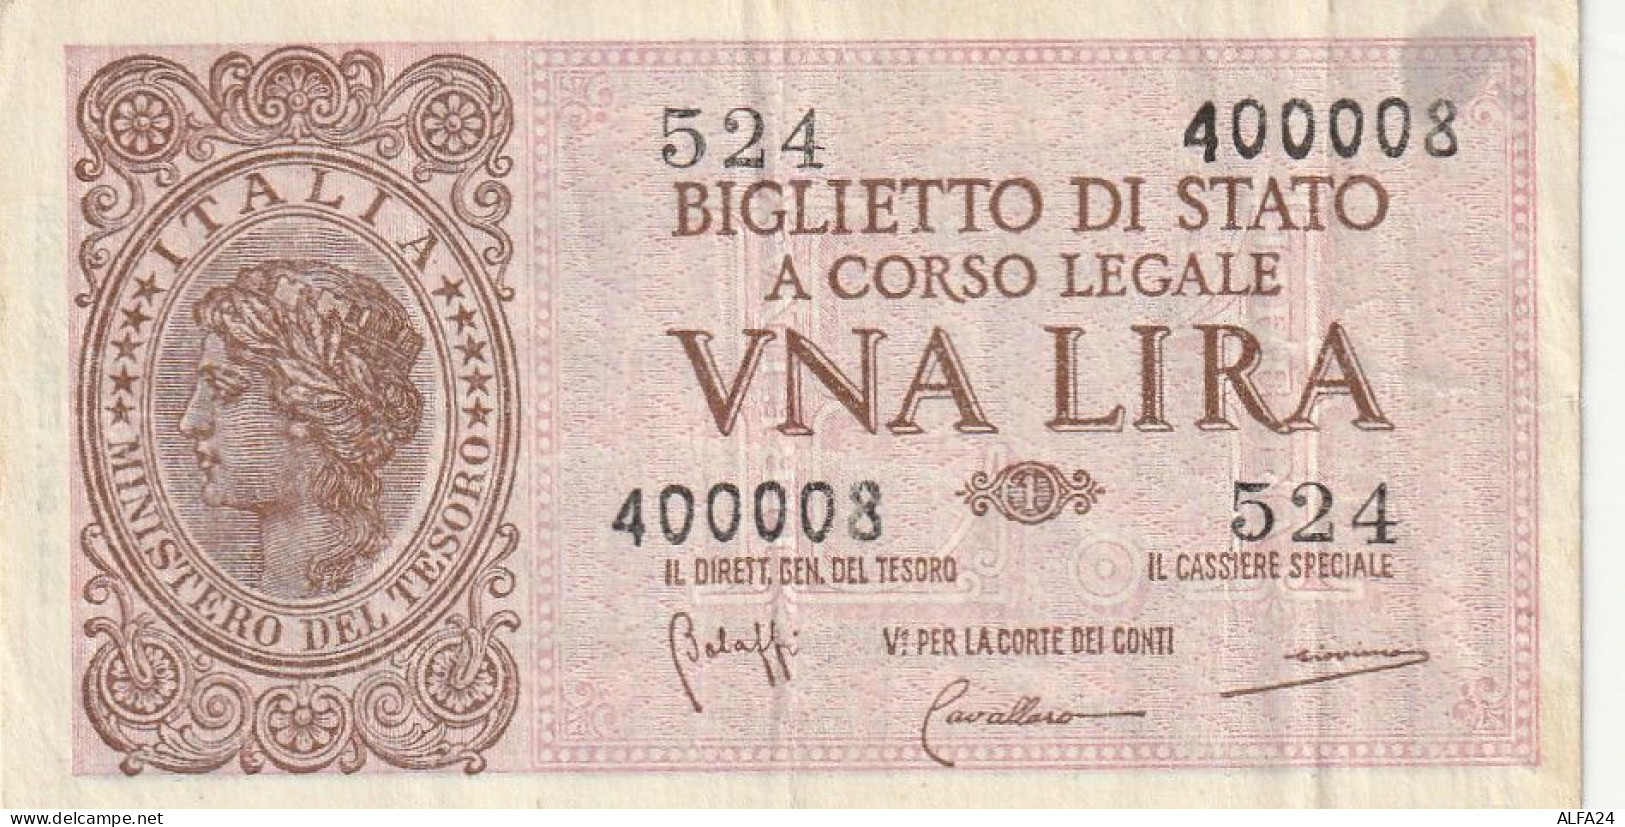 BANCONOTA BIGLIETTO DI STATO ITALIA 1 LIRA VF  (B_345 - Italia – 1 Lira